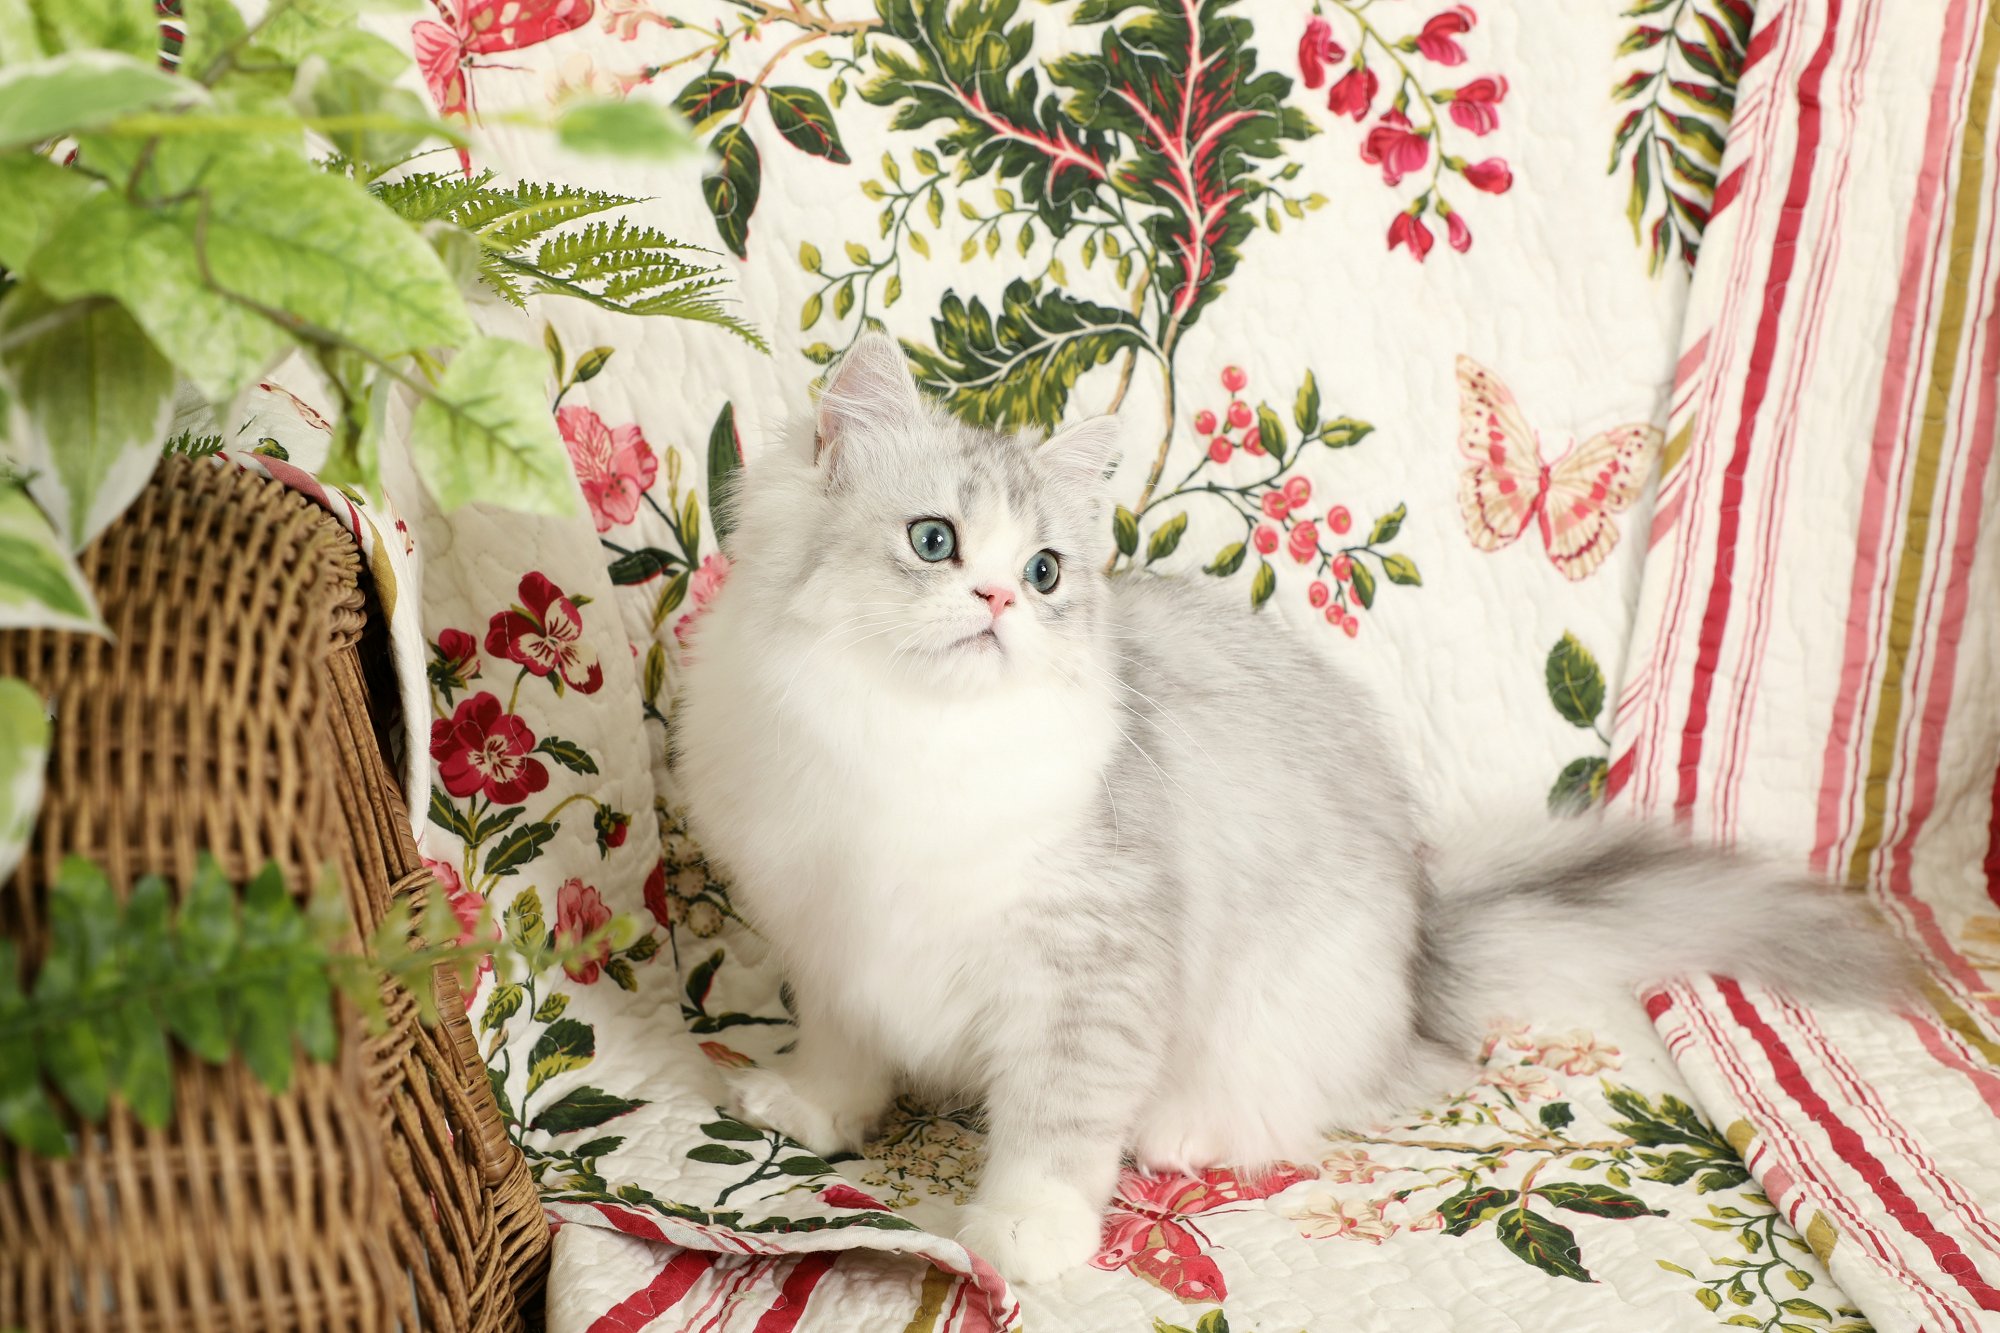 Teacup Persian Kitten